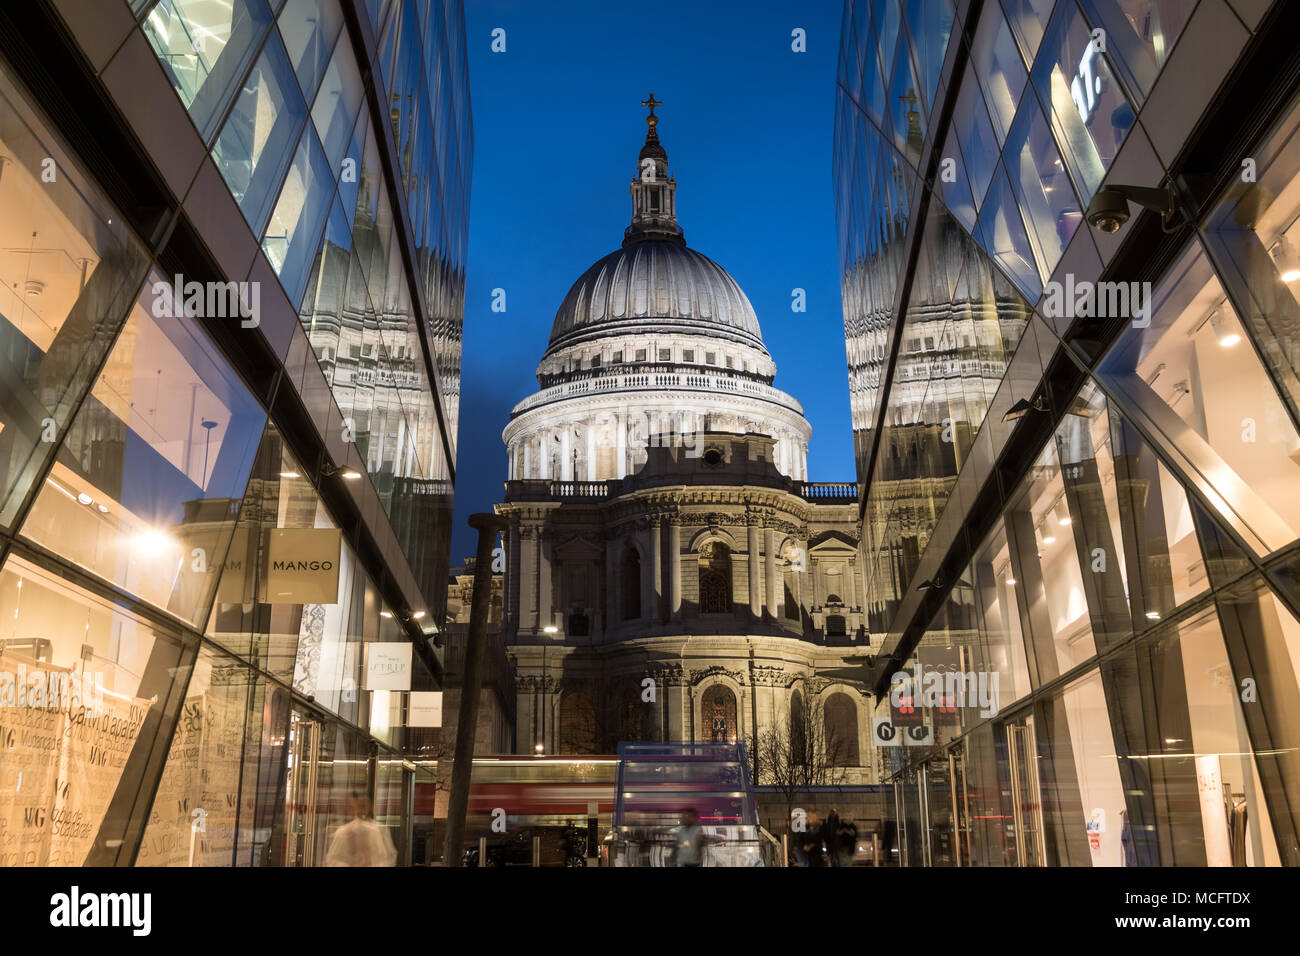 Vista de la cúpula de la Catedral de St Paul. Fotografiado en hora azul de un nuevo cambio, Londres, Reino Unido Foto de stock